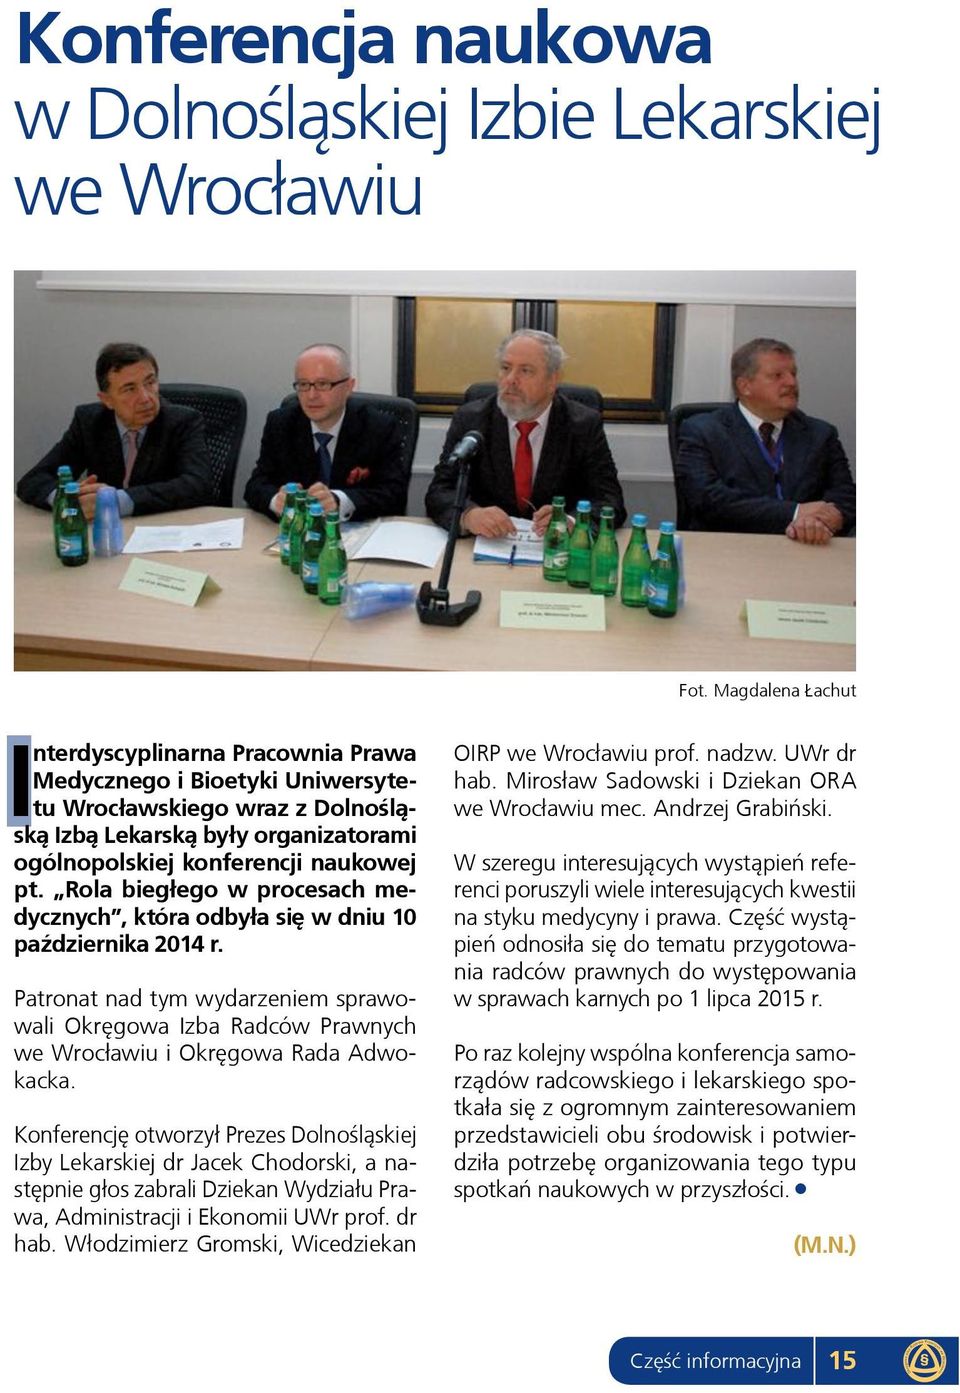 Rola biegłego w procesach medycznych, która odbyła się w dniu 10 października 2014 r. Patronat nad tym wydarzeniem sprawowali Okręgowa Izba Radców Prawnych we Wrocławiu i Okręgowa Rada Adwokacka.